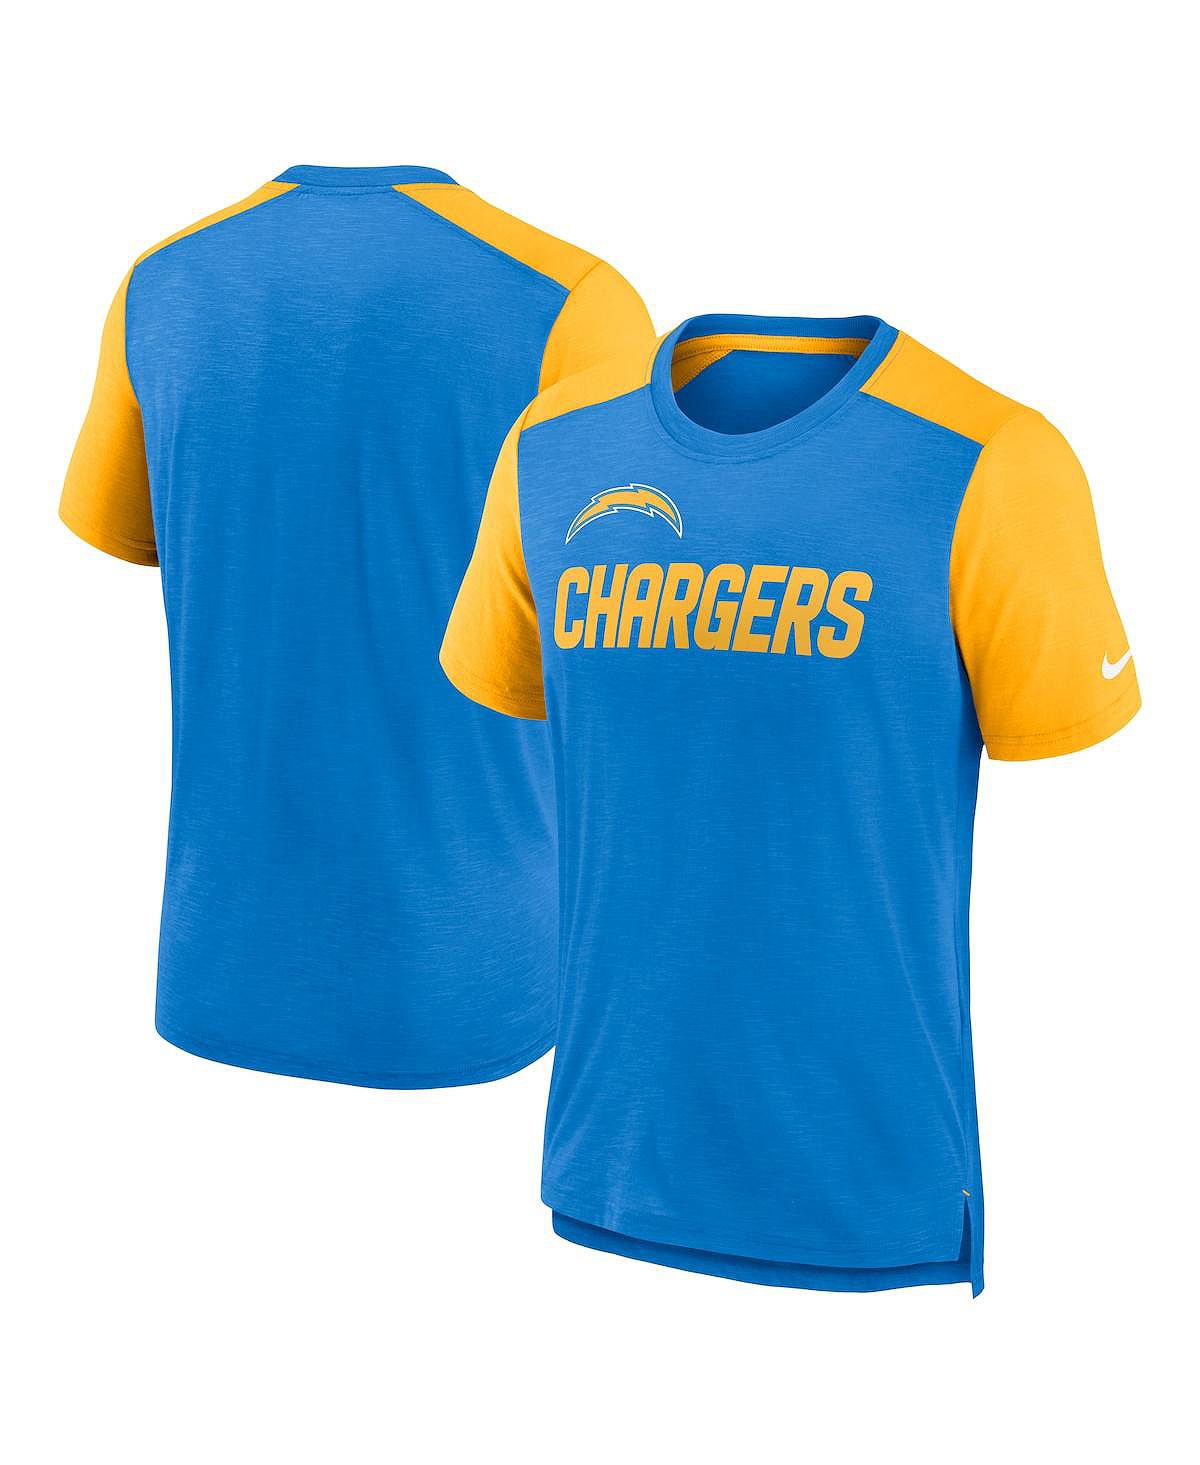 Мужская футболка с цветным блоком «Порошково-синяя и золотая с меланжем» Los Angeles Chargers с названием команды Nike мужской складной кошелек los angeles chargers